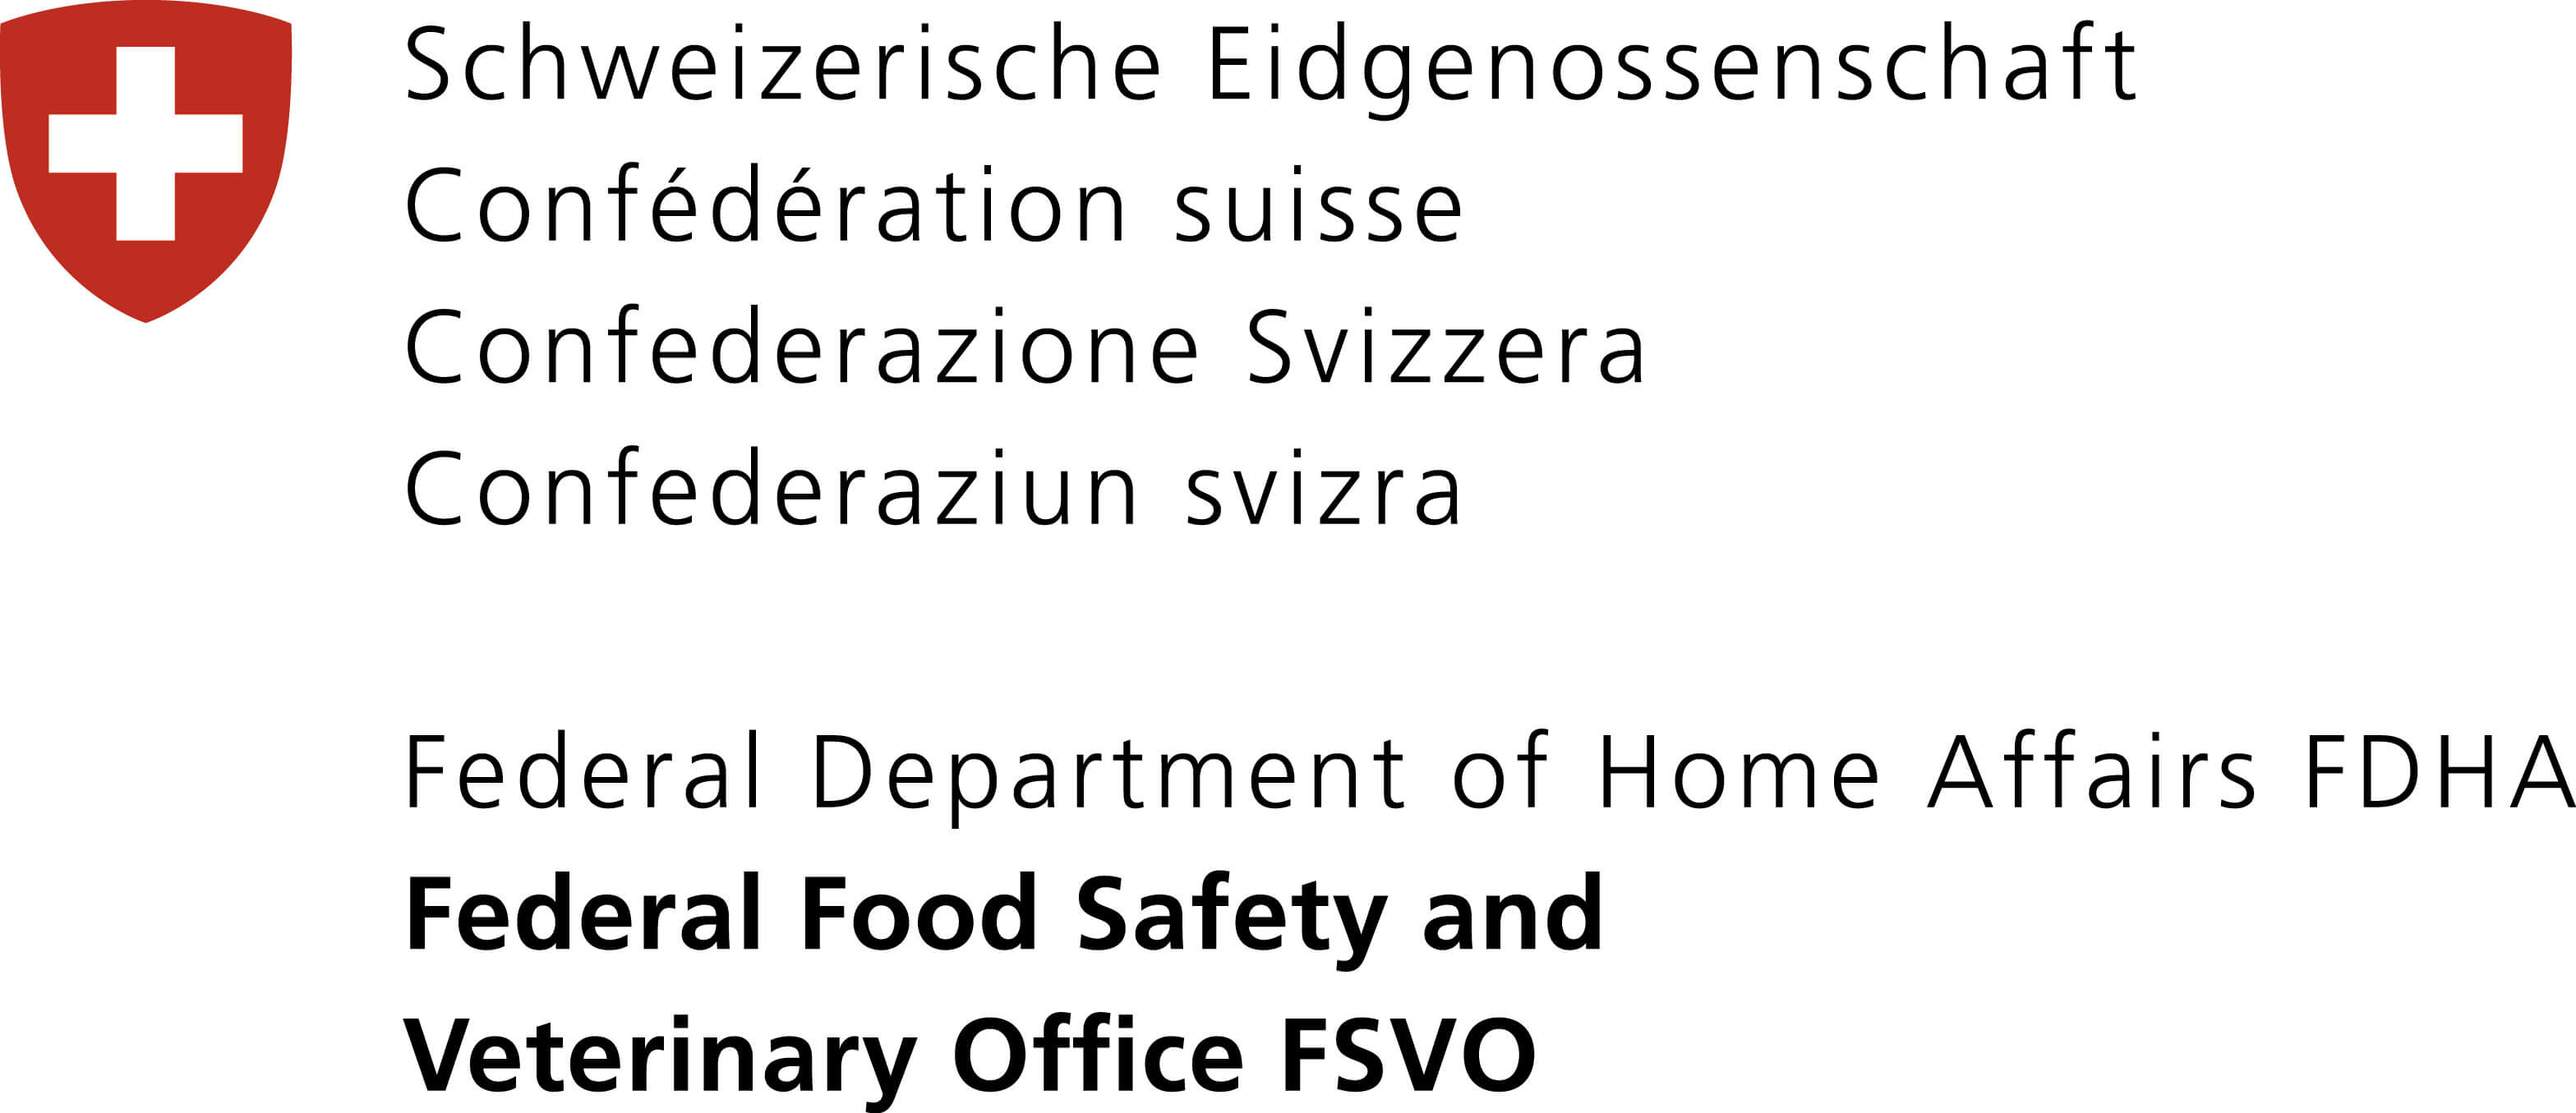 SECO - State Secretariat for Economic Affairs in Switzerland